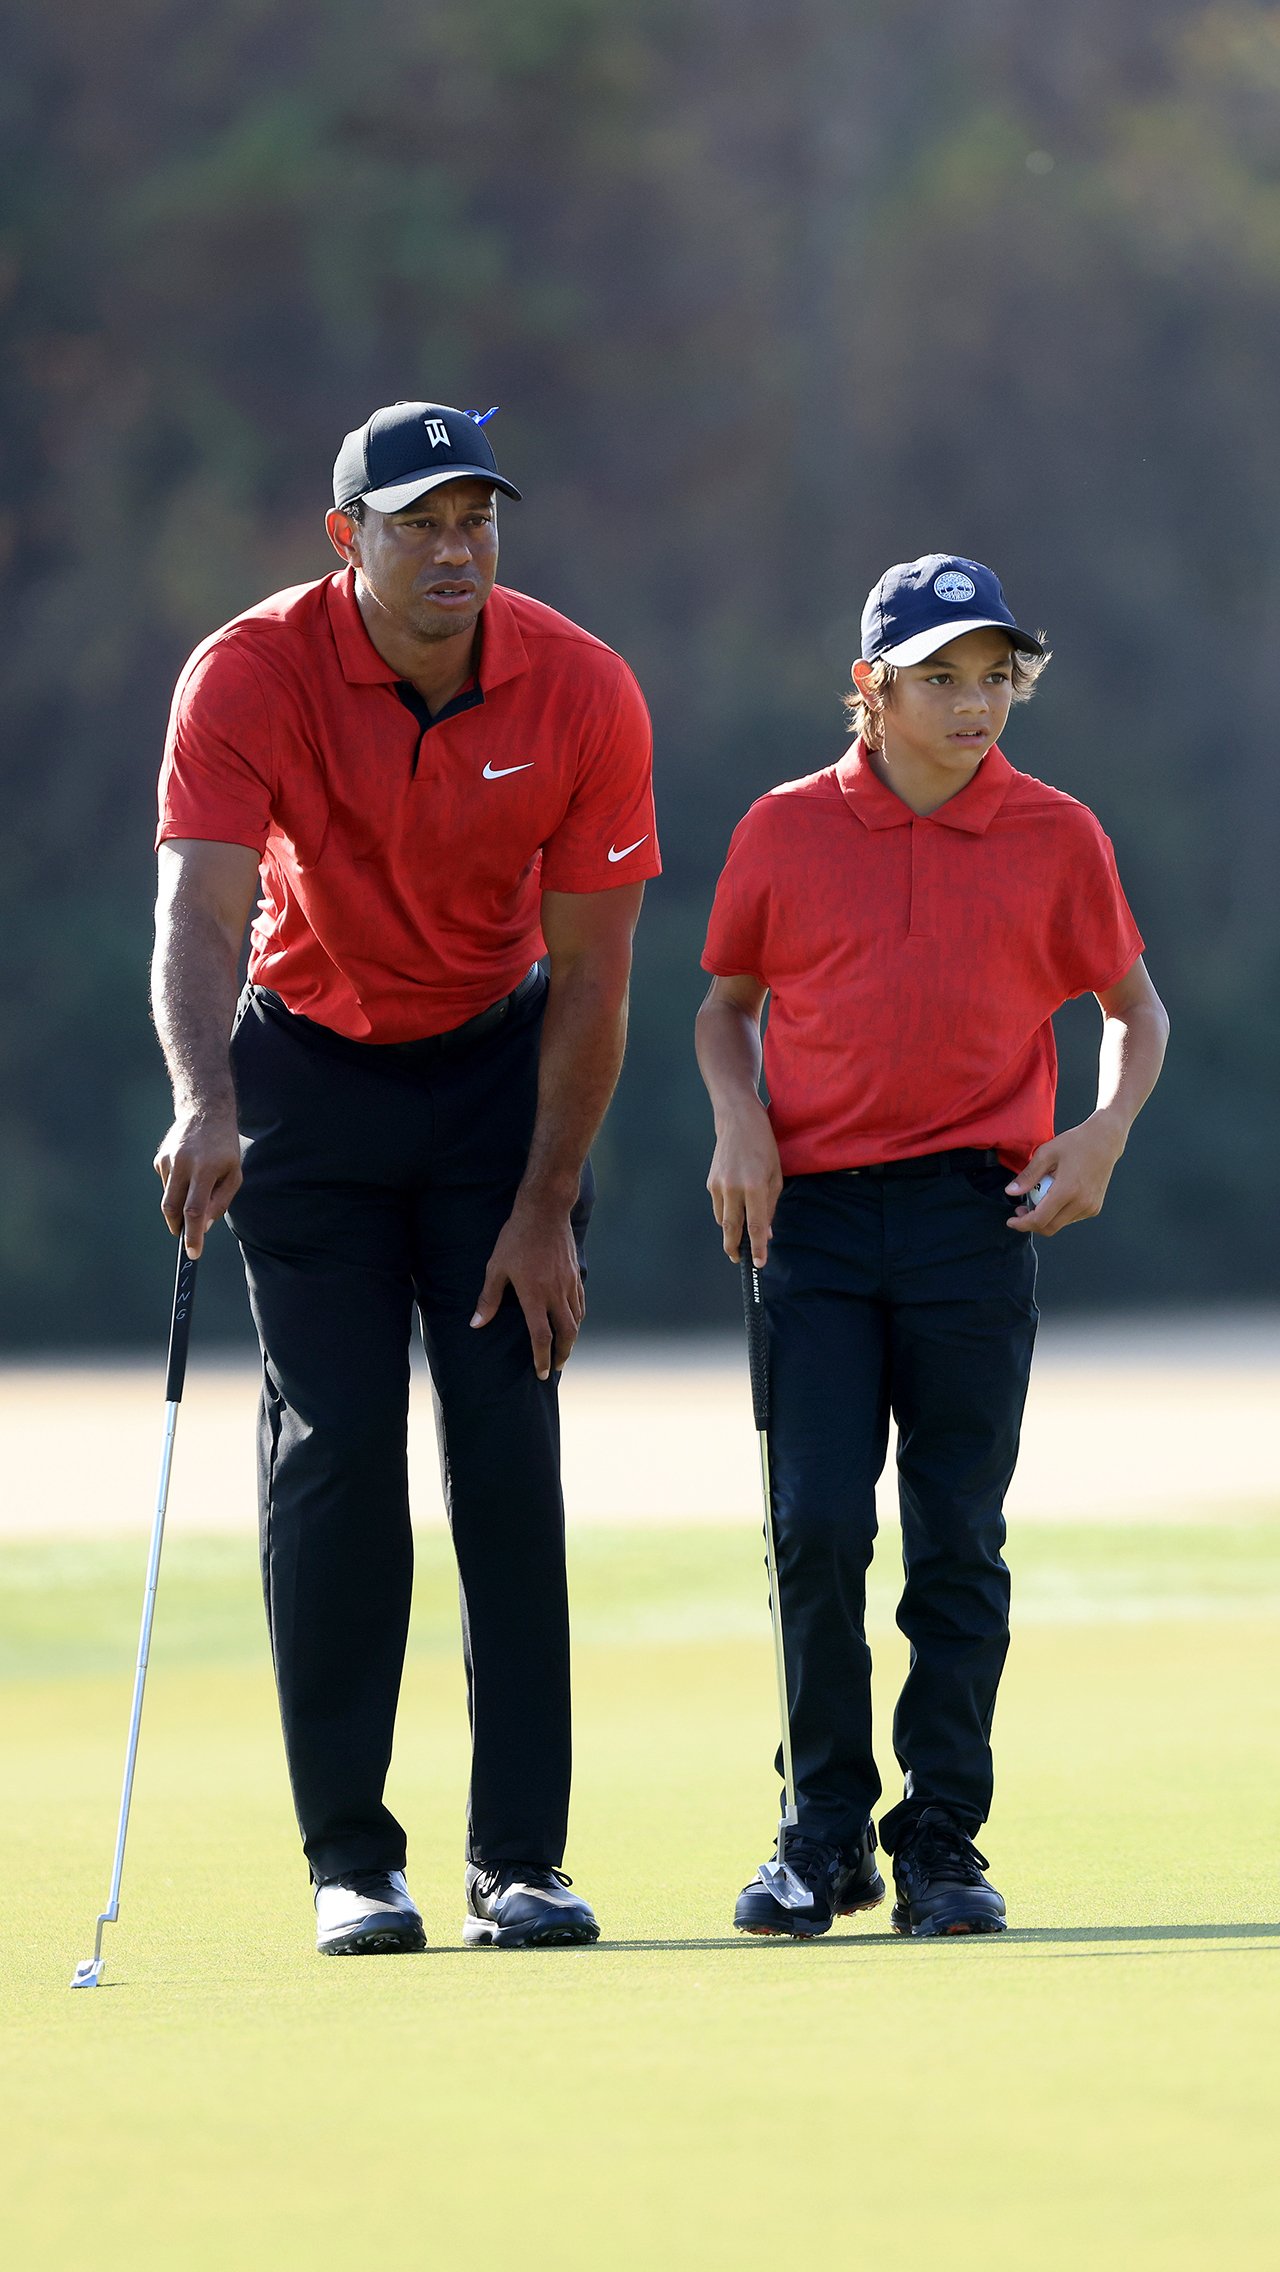 Сейчас Чарли 12 лет. Парень подаёт большие надежды в гольфе. Недавно Чарли и Тайгер заняли второе место в престижном парном чемпионате PNC.